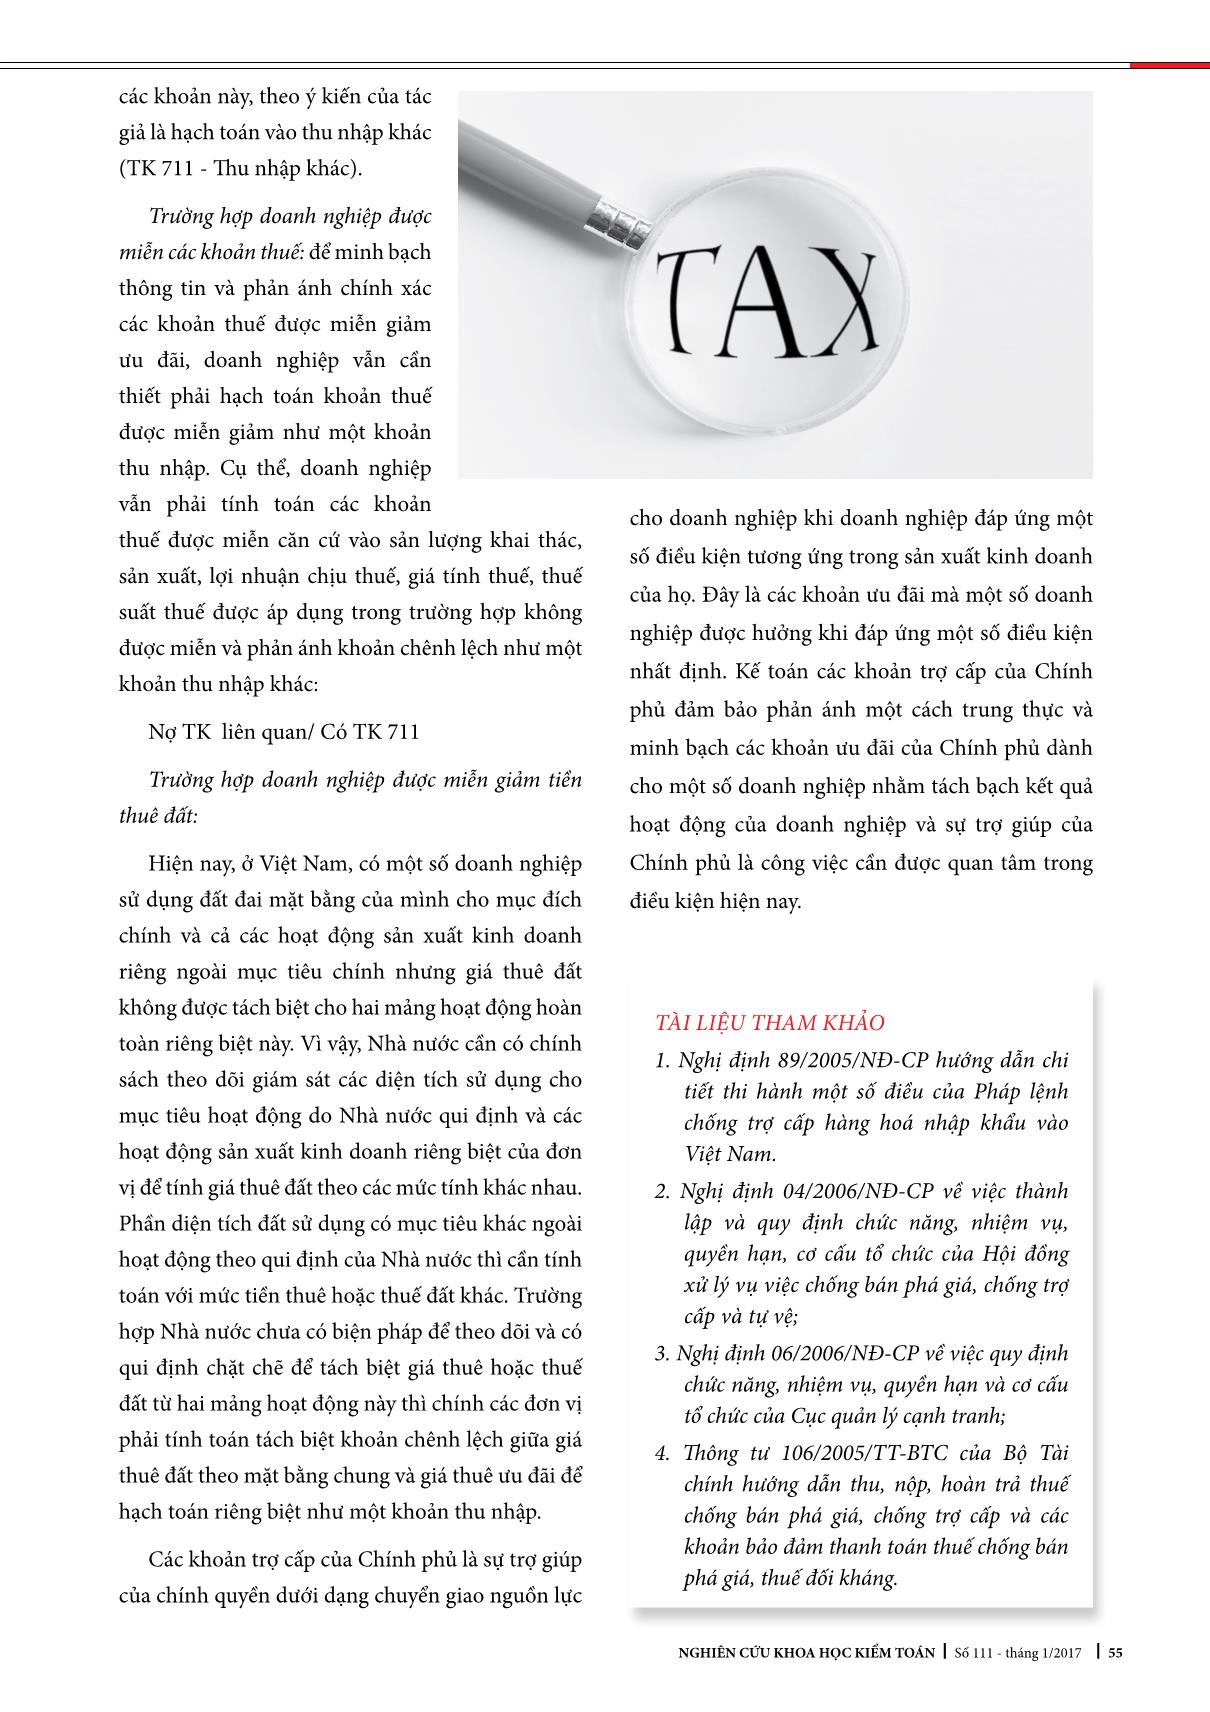 Ưu đãi thuế và ho trợ lãi cho vay vốn: Kế toán các khoản trợ cấp của chính phủ: trang 6